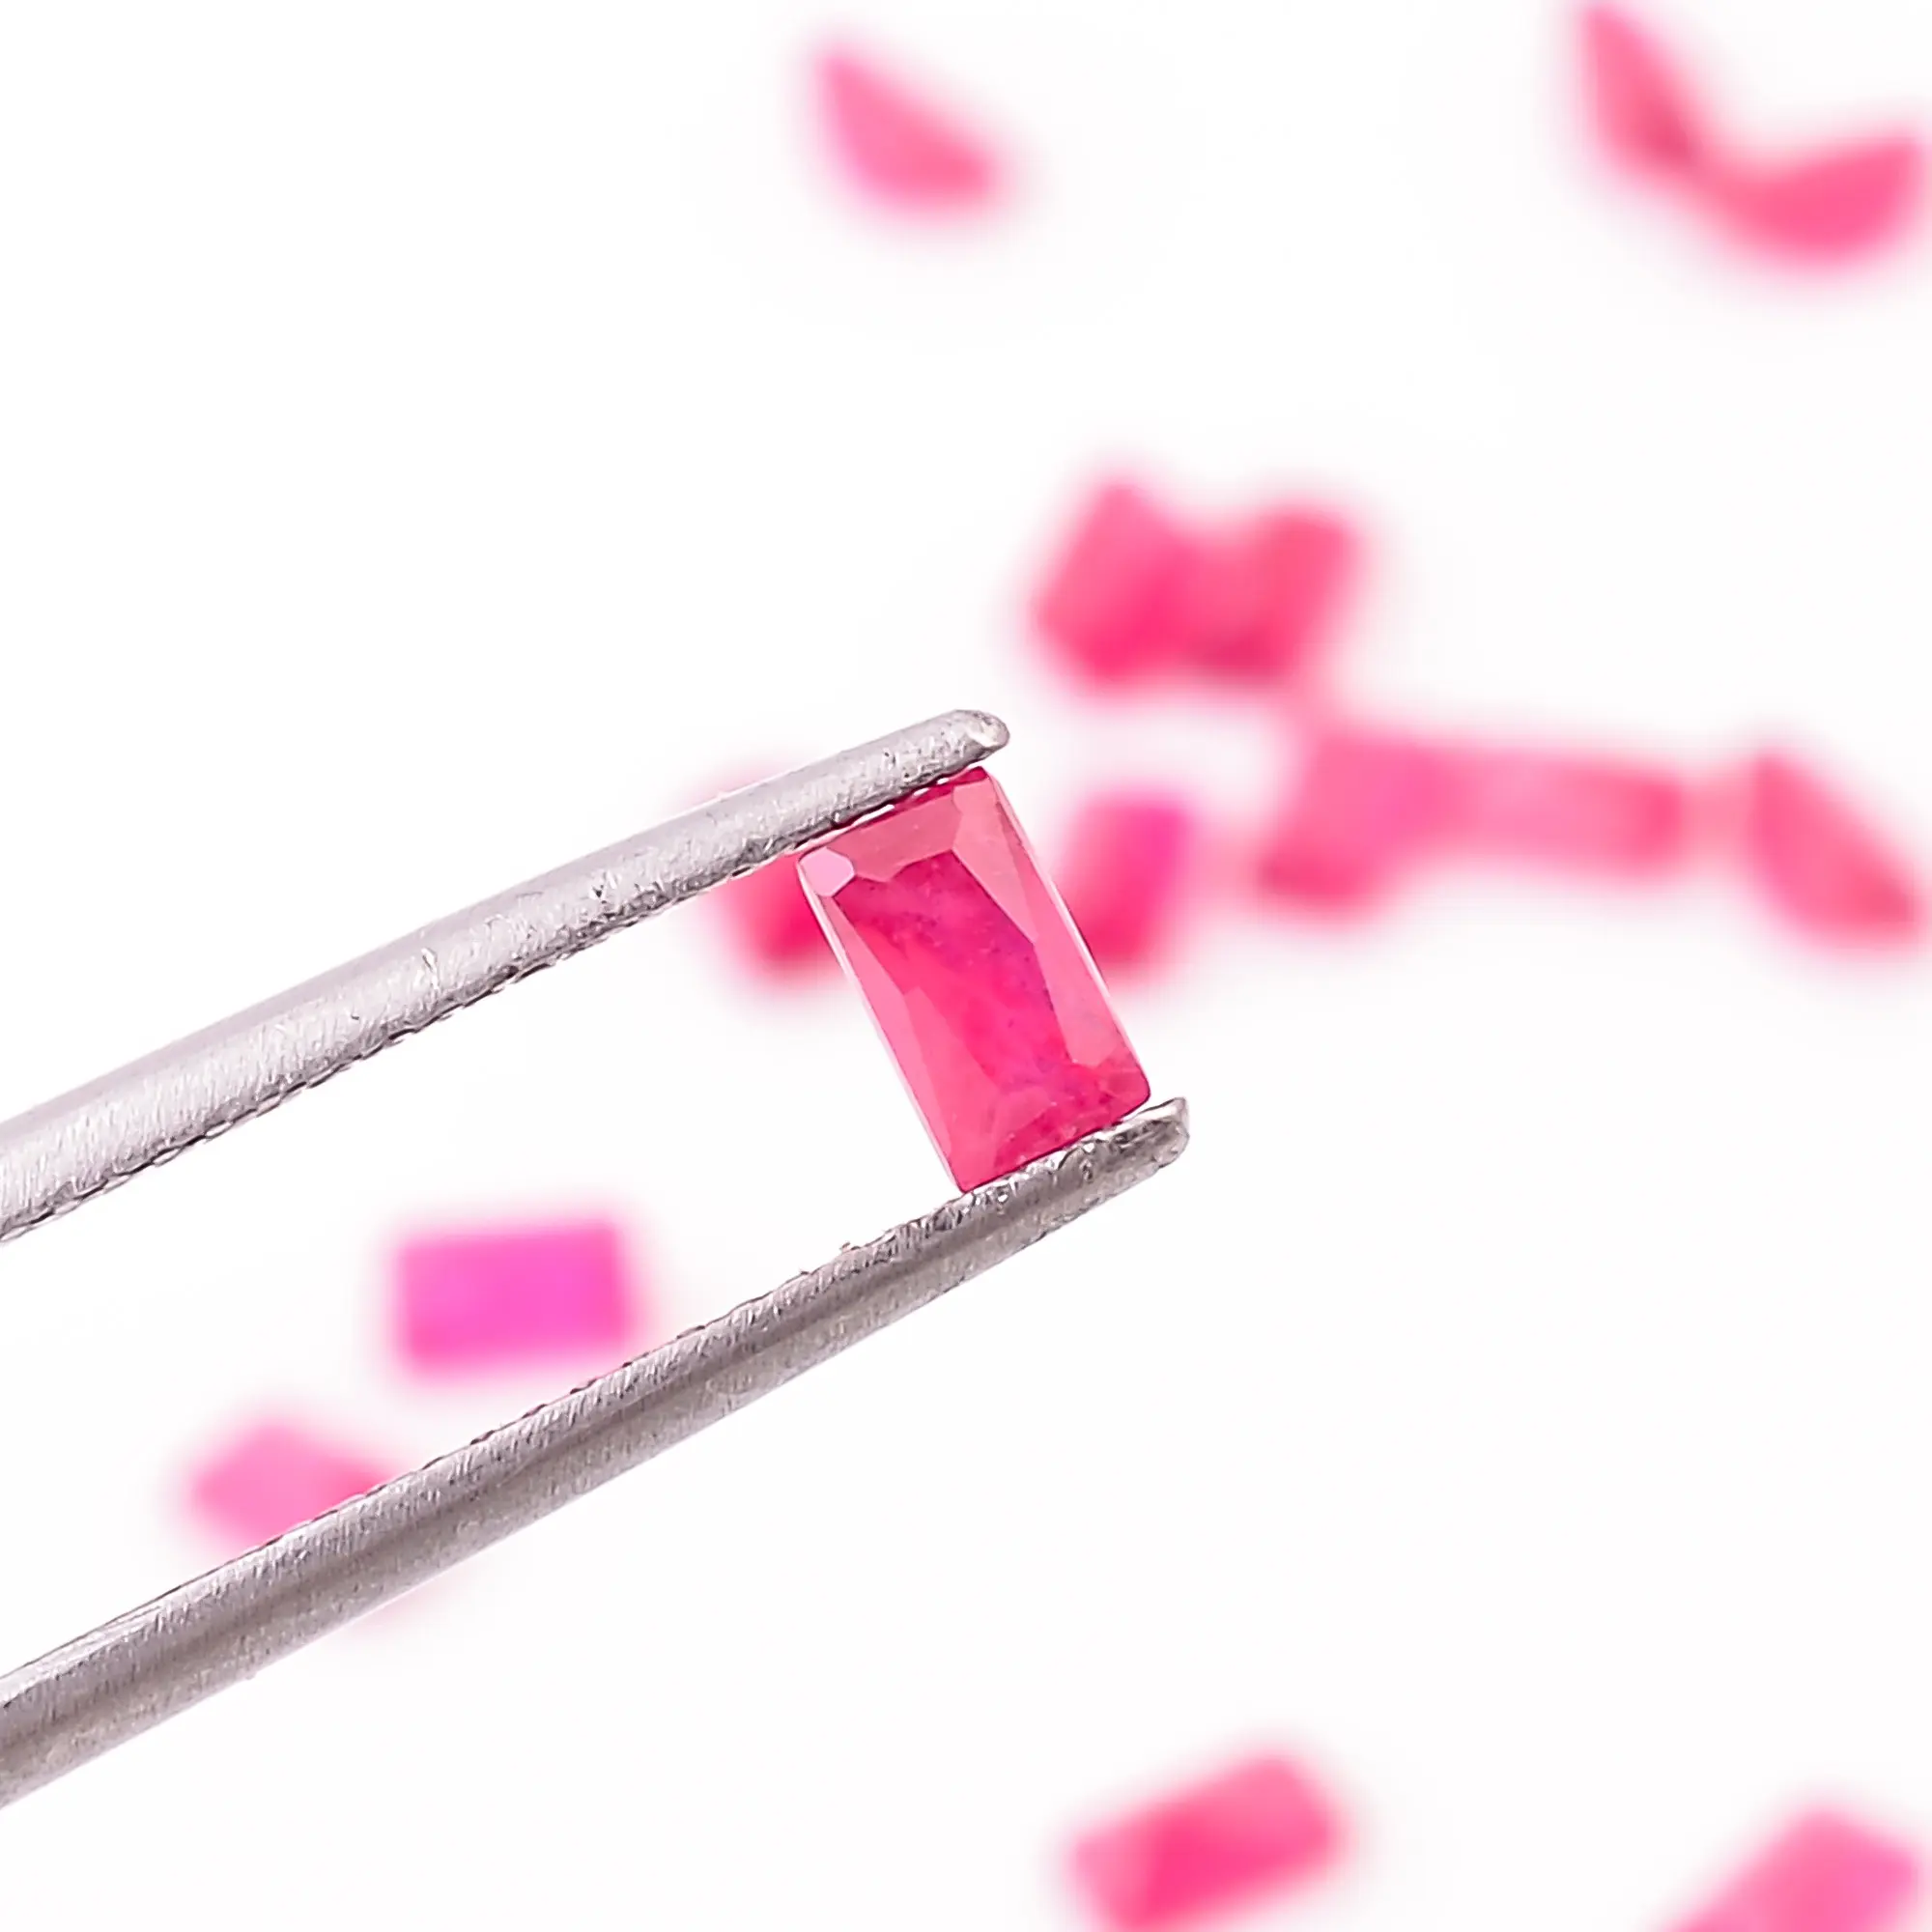 Asequible rubí radiante piedra preciosa forma redonda cabujón corte para la fabricación de joyas facetado calibrado radiante corte color rosa Rubí